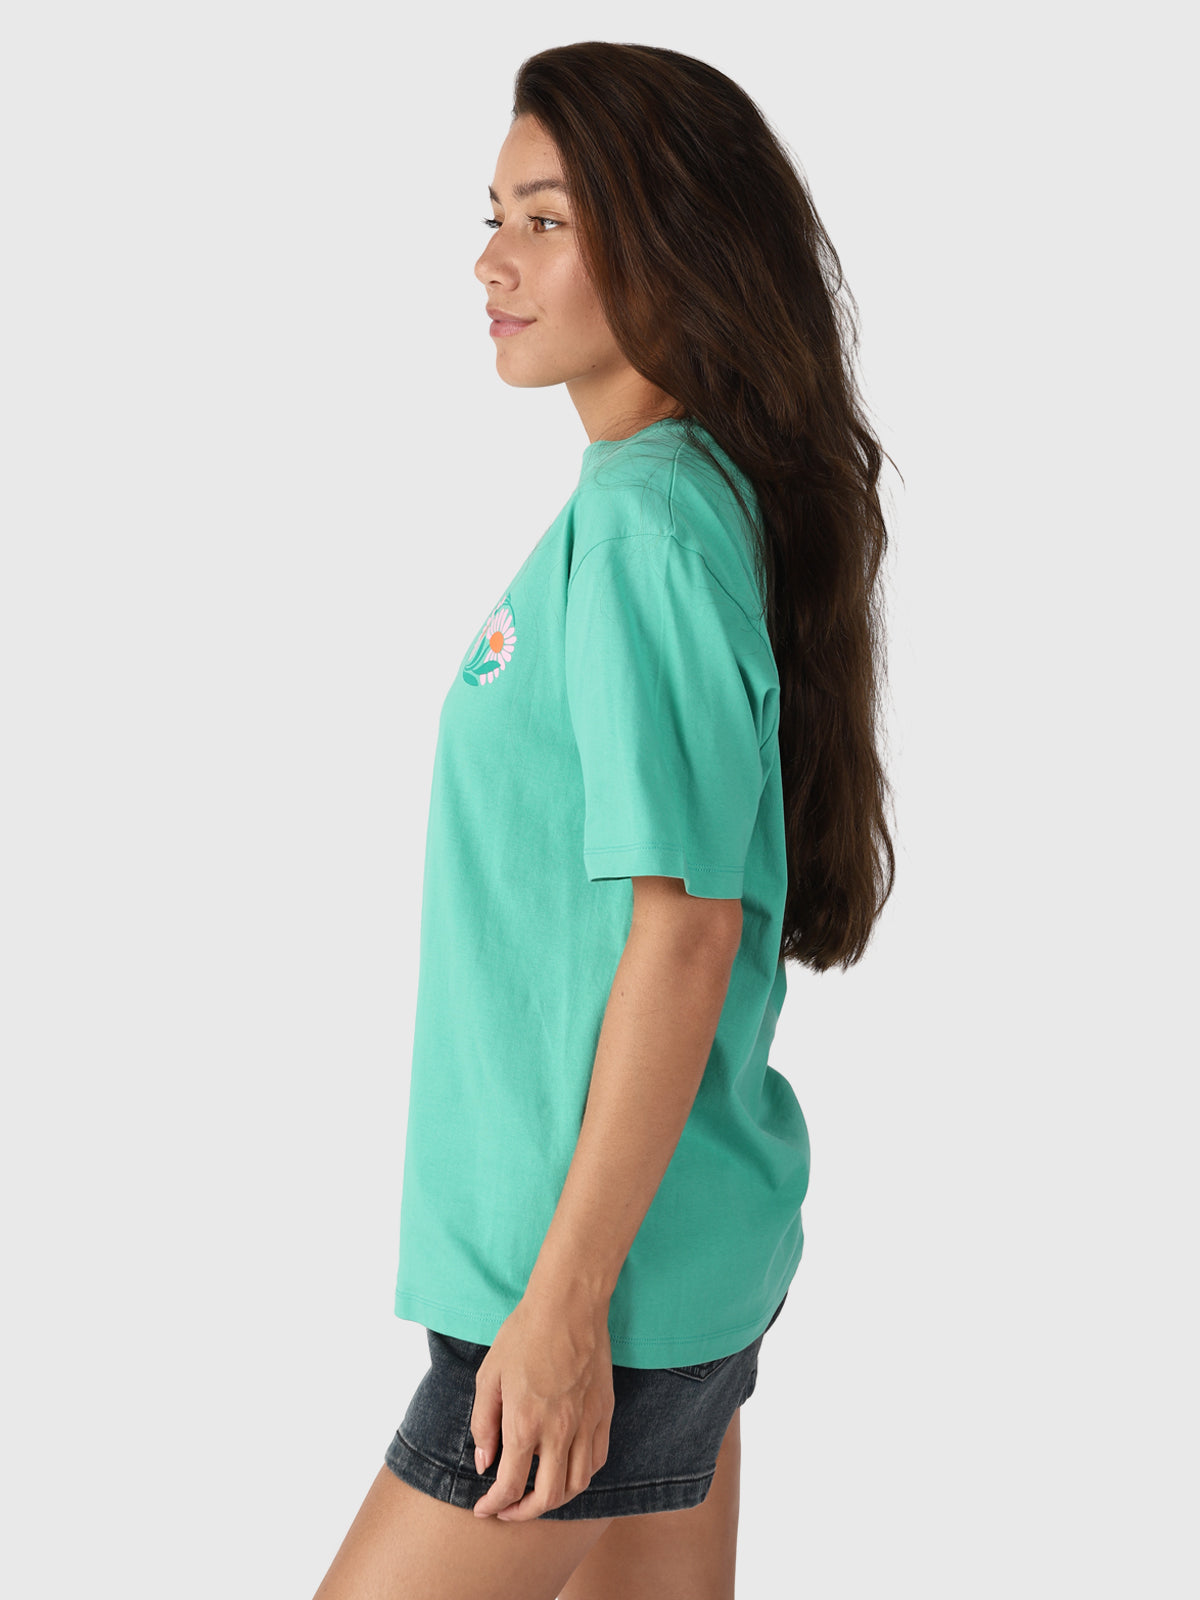 Imani-R Damen T-Shirt | Grün